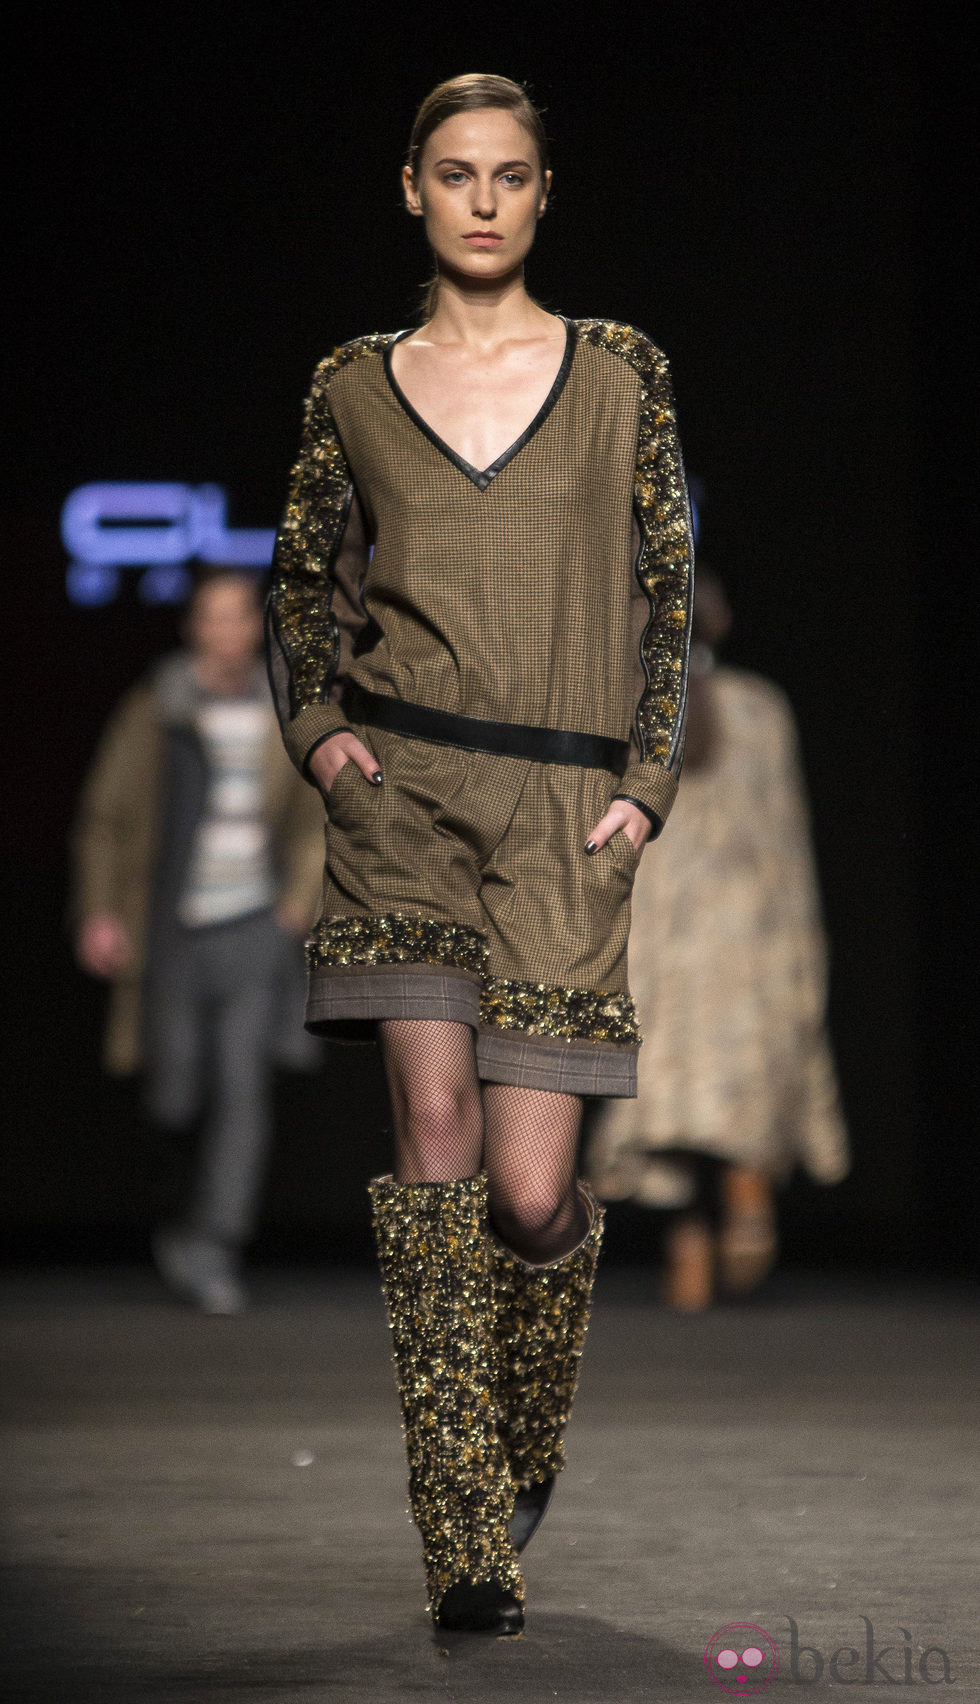 Vestido con detalles dorados de Custo Barcelona en la 080 Barcelona Fashion 2015